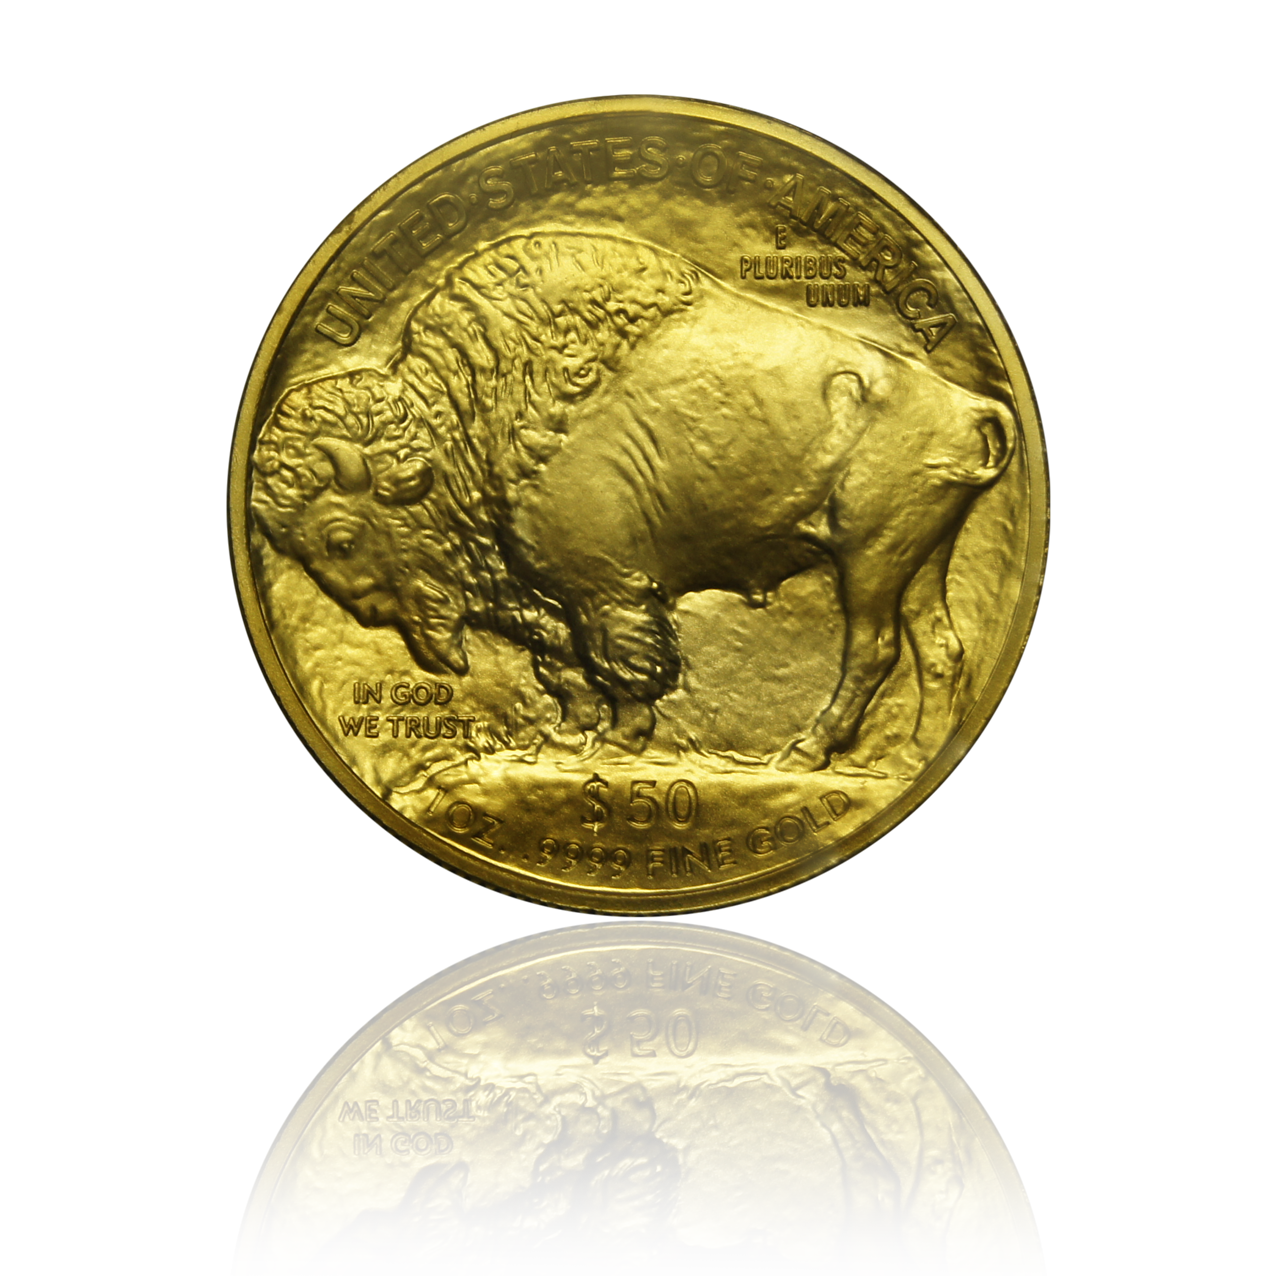 Buffalo - USA 1 oz gold coin